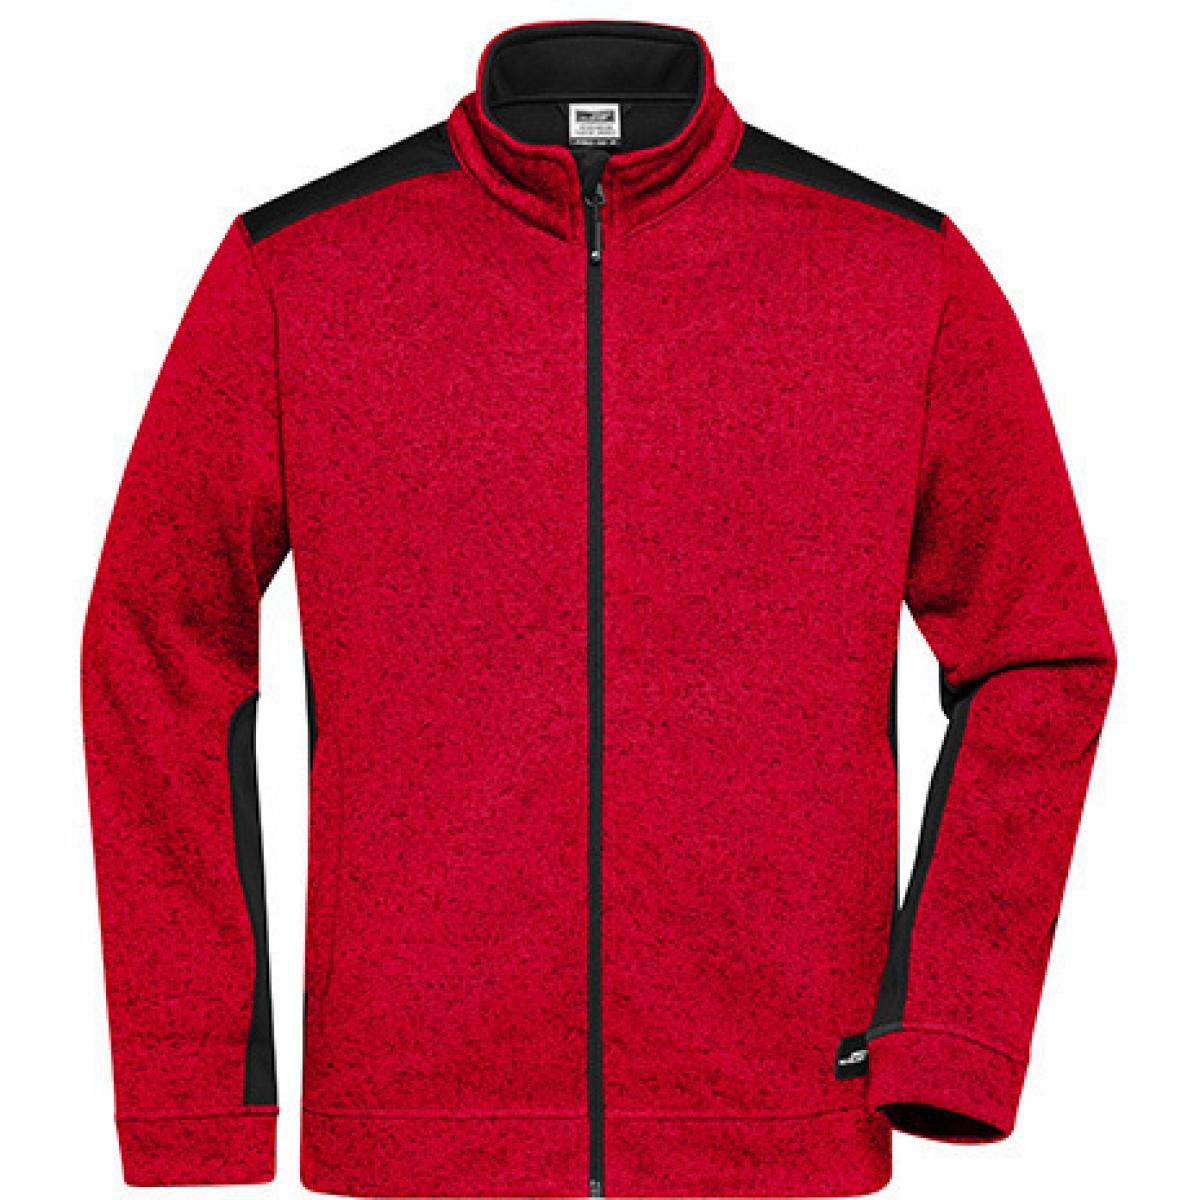 Hersteller: James+Nicholson Herstellernummer: JN862 Artikelbezeichnung: Herren Jacke, Men‘s Knitted Workwear Fleece Jacket -STRONG- Farbe: Red Melange/Black